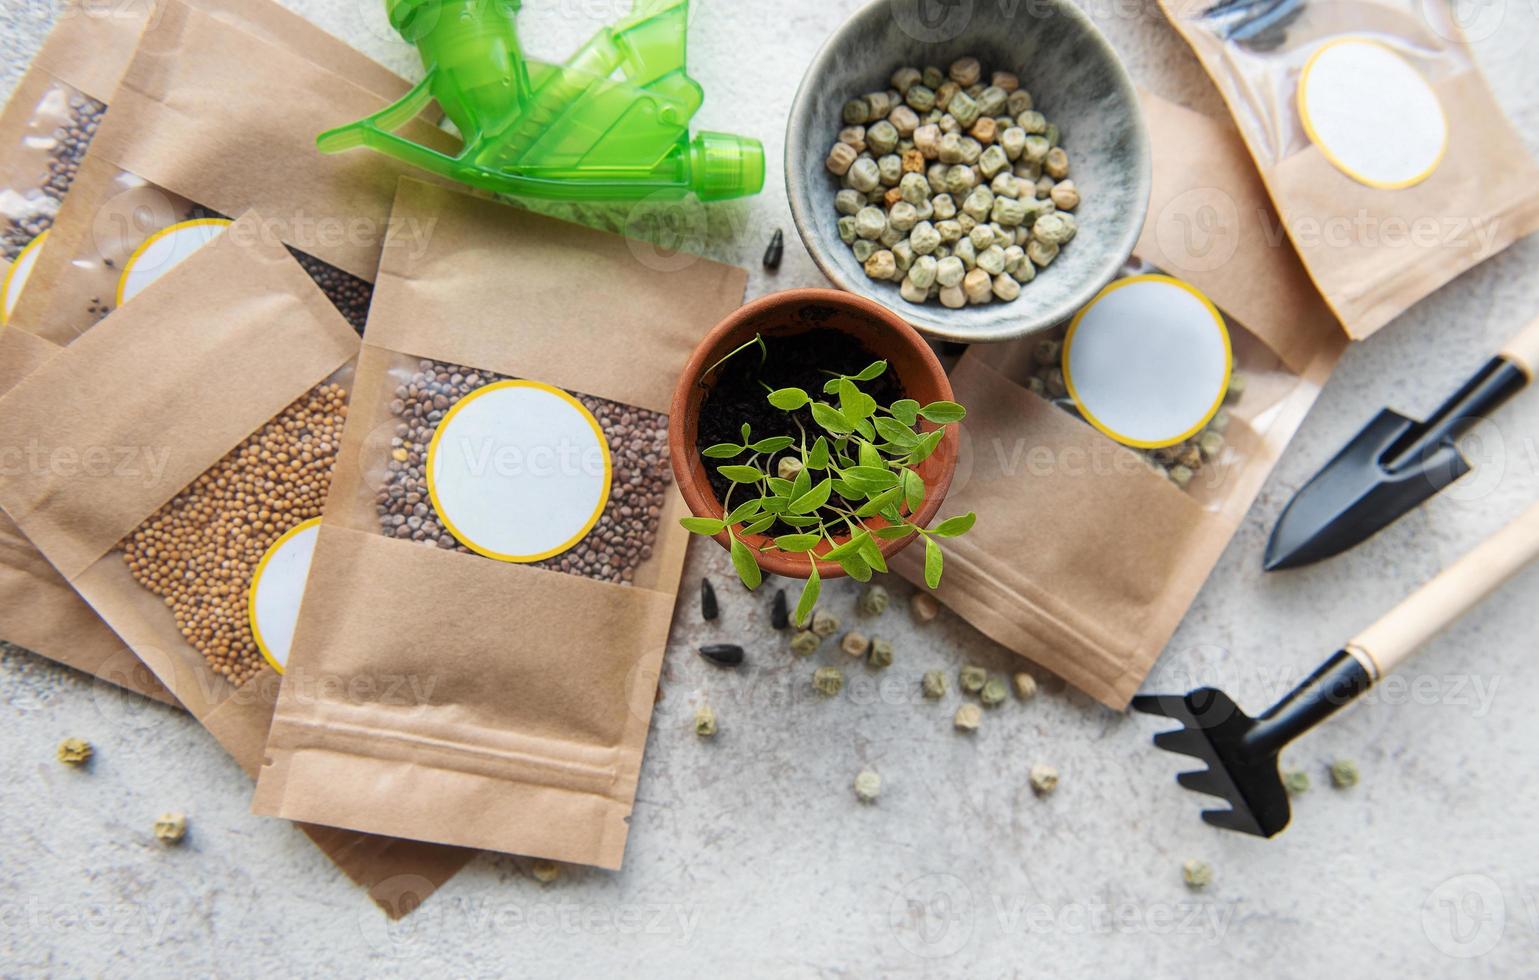 sementes de microgreens em sacos de papel e equipamentos para semear microgreens. foto